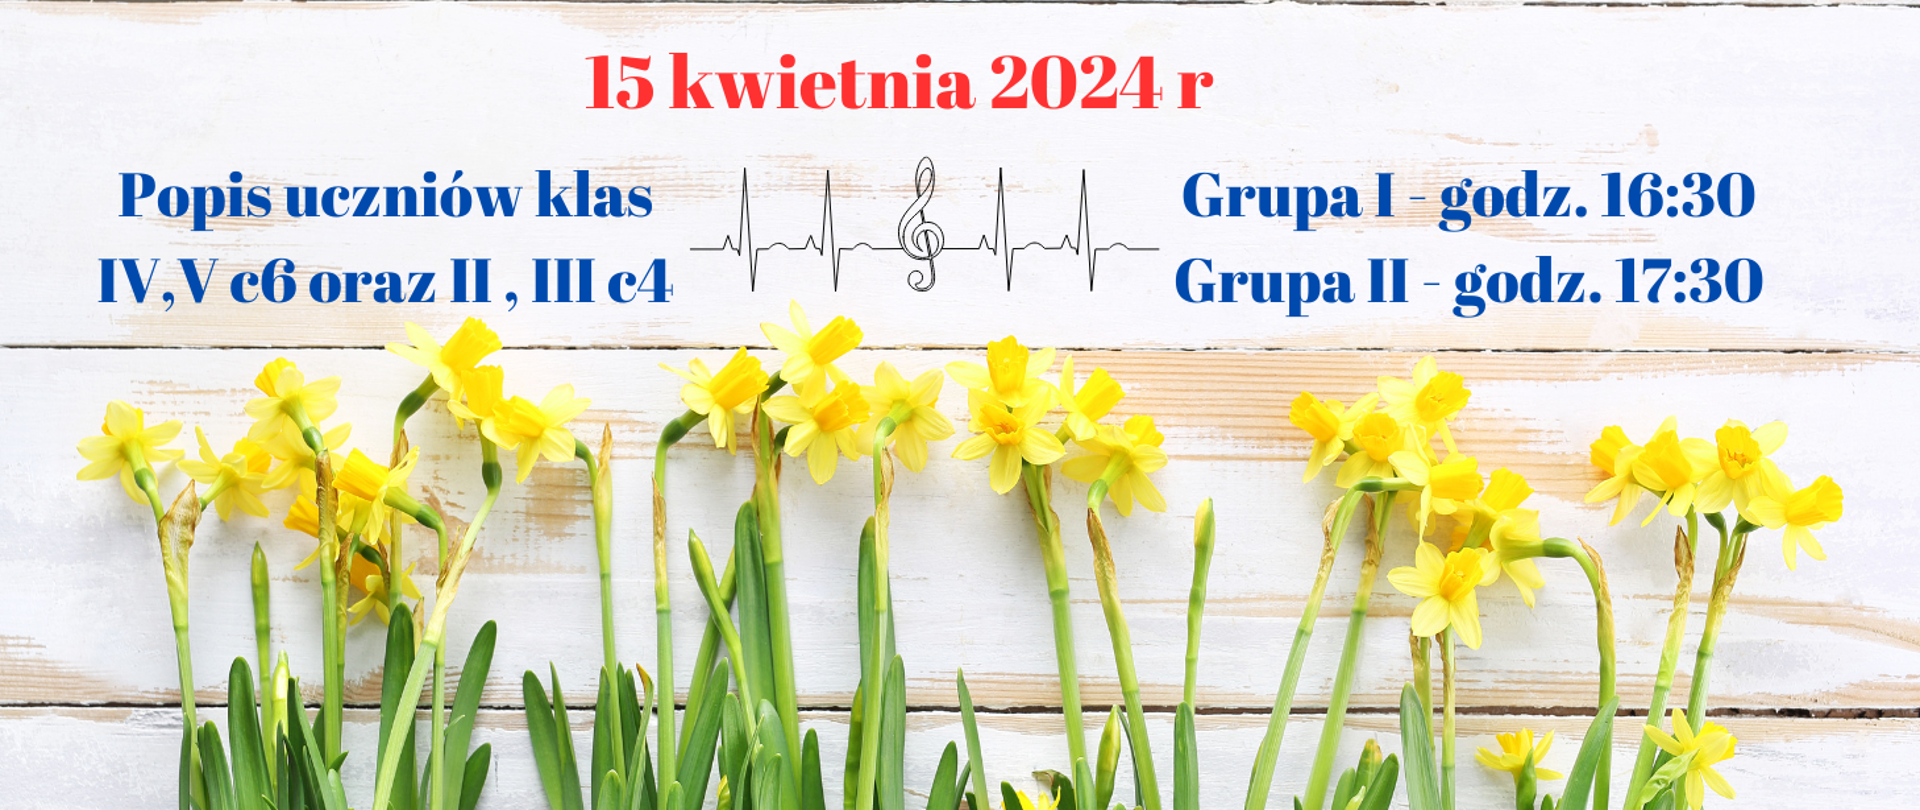 Grafika przedstawia informację o popisie klasowym w dniu 15 kwietnia 2024 r. Na dole kwiaty żonkile.